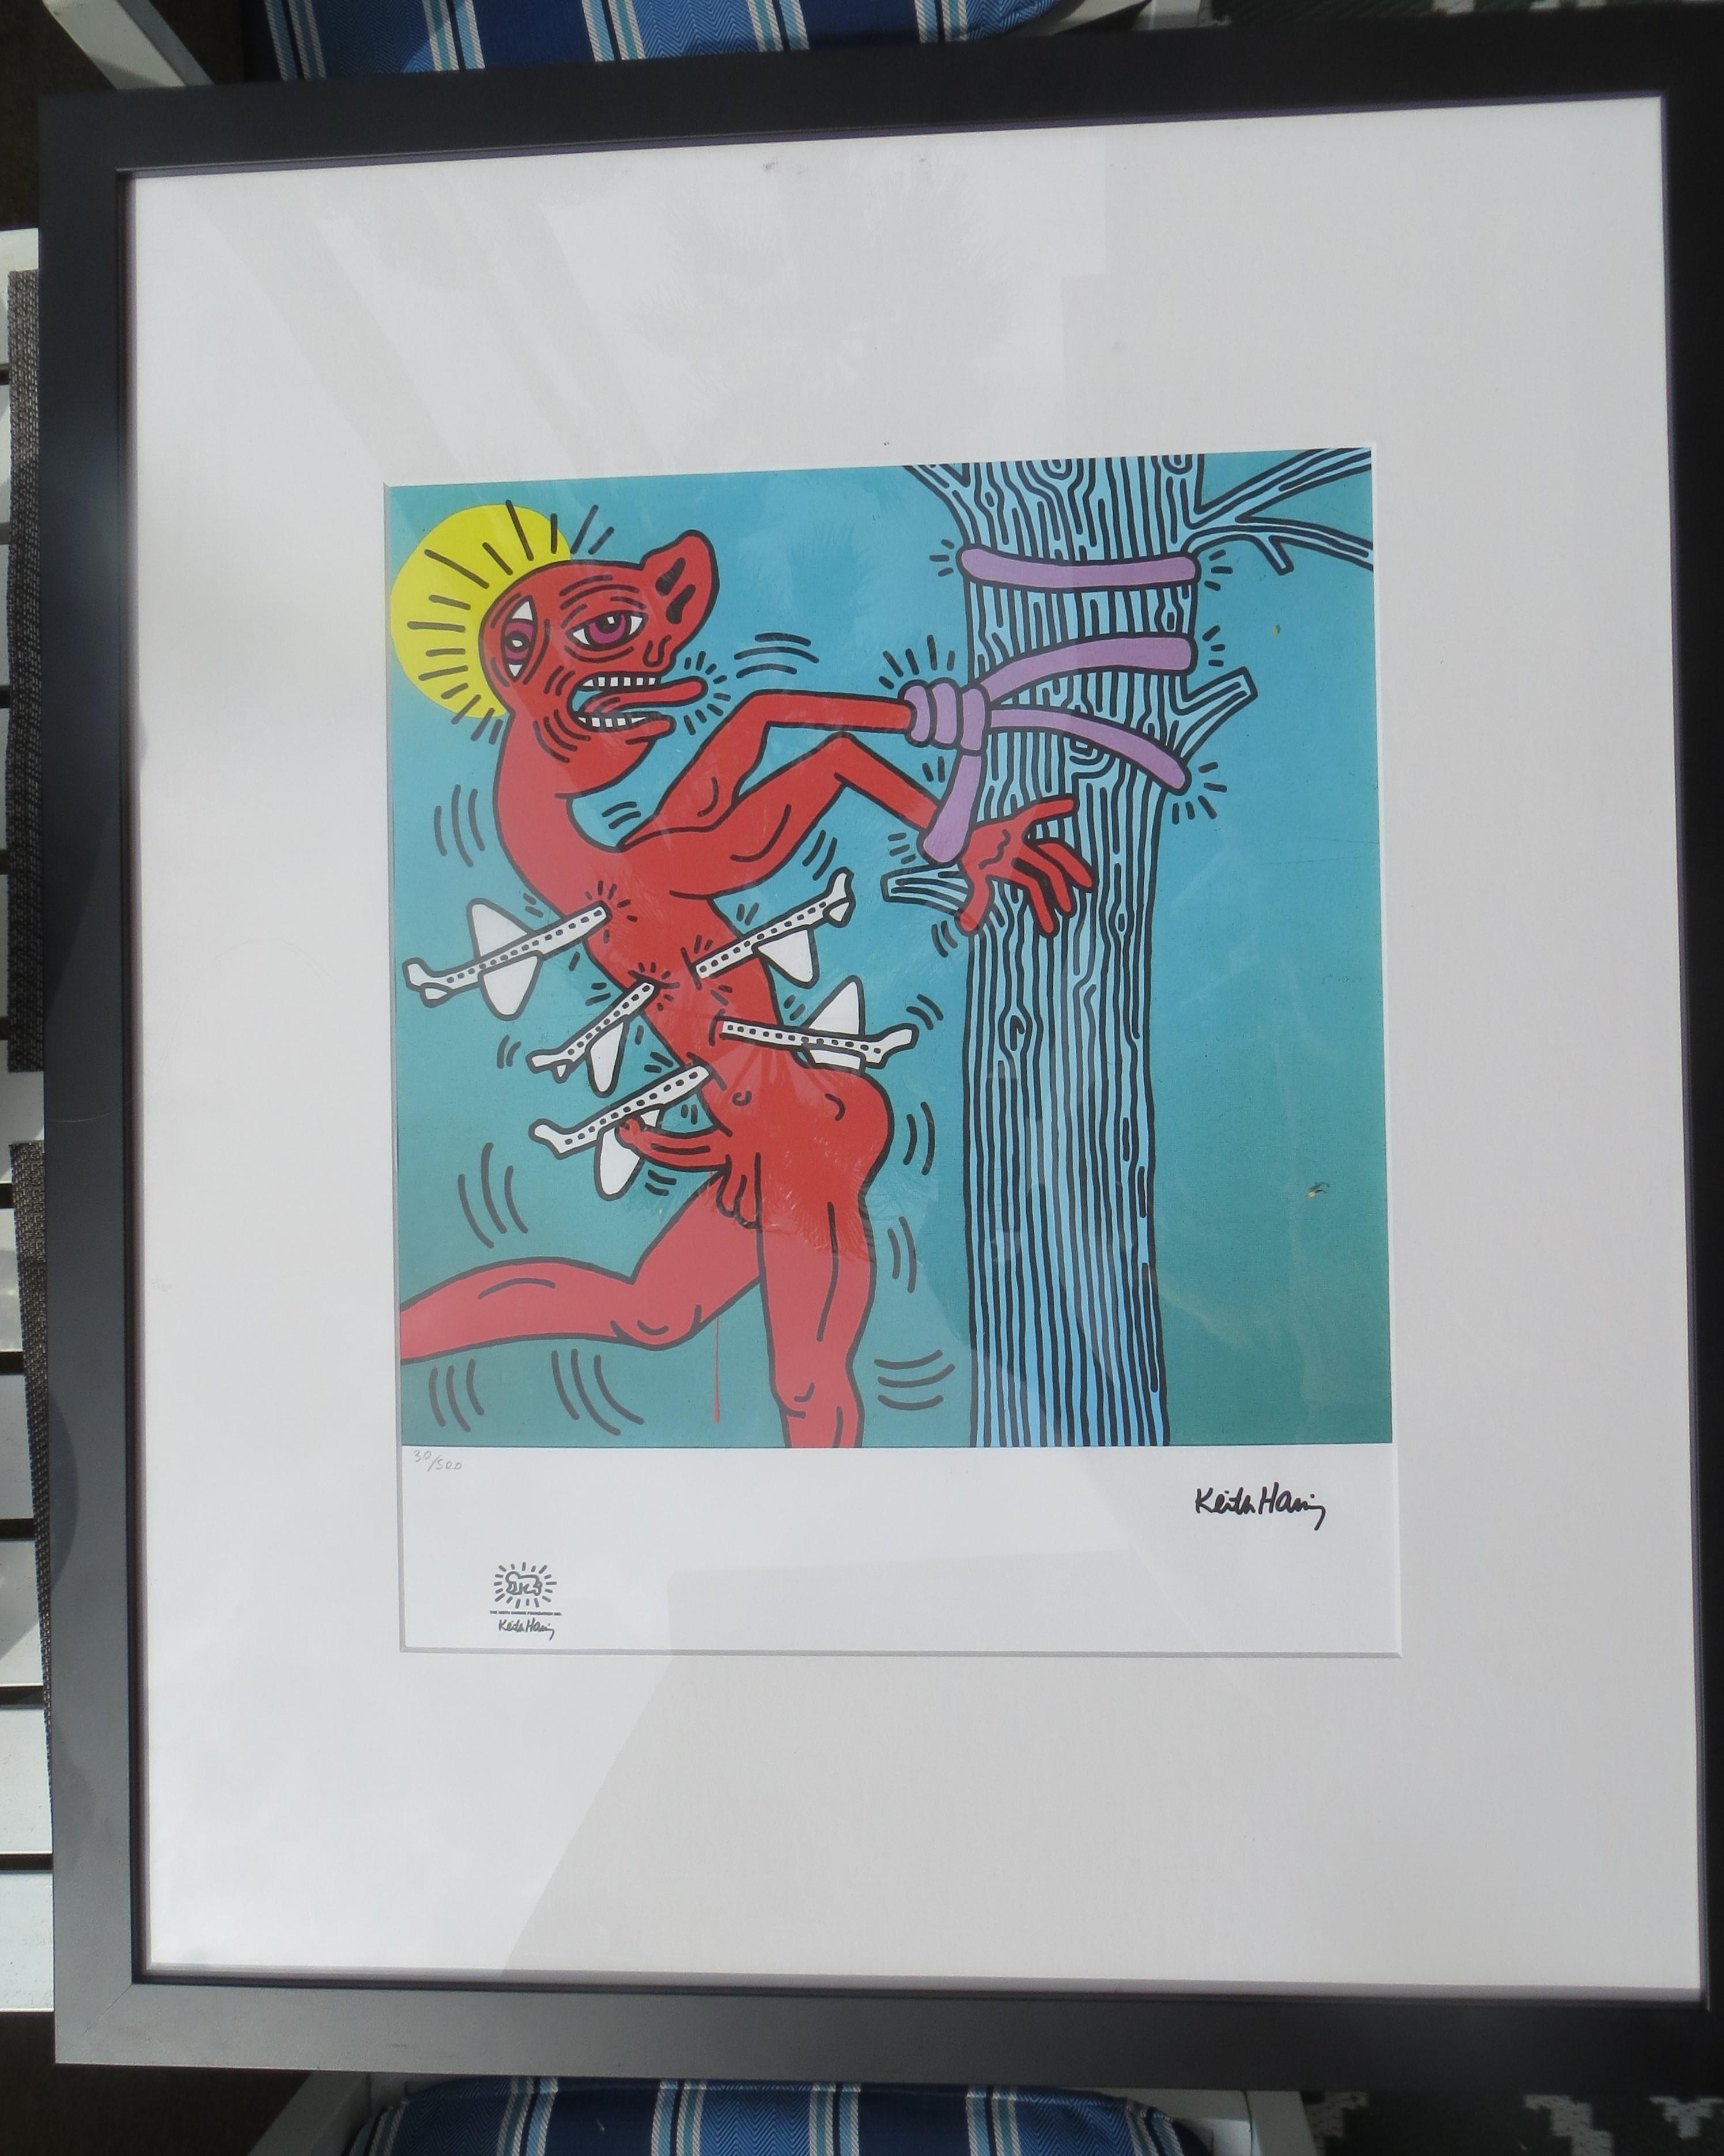 F, Keith Haring, édition limitée à 500 exemplaires, numéro 30.
Œuvre d'art lithographiée par la Fondation Keith Haring, numérotée avec un cachet en relief.
L'image présente le célèbre artiste pop américain et activiste social Keith Haring dans une